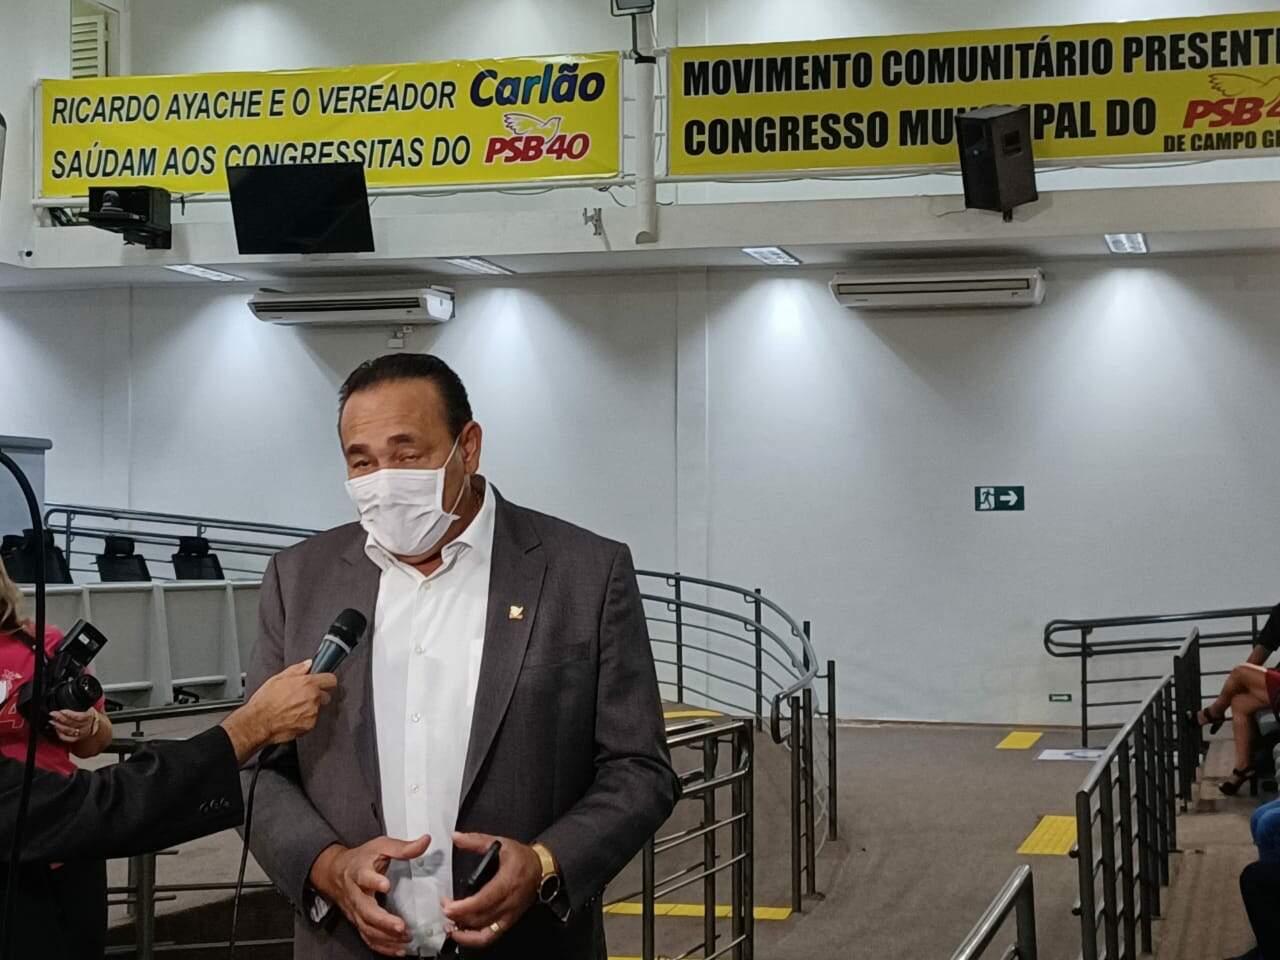 whatsapp image 2022 02 17 at 19.28.44 - Carlão reassume diretório do PSB em Campo Grande